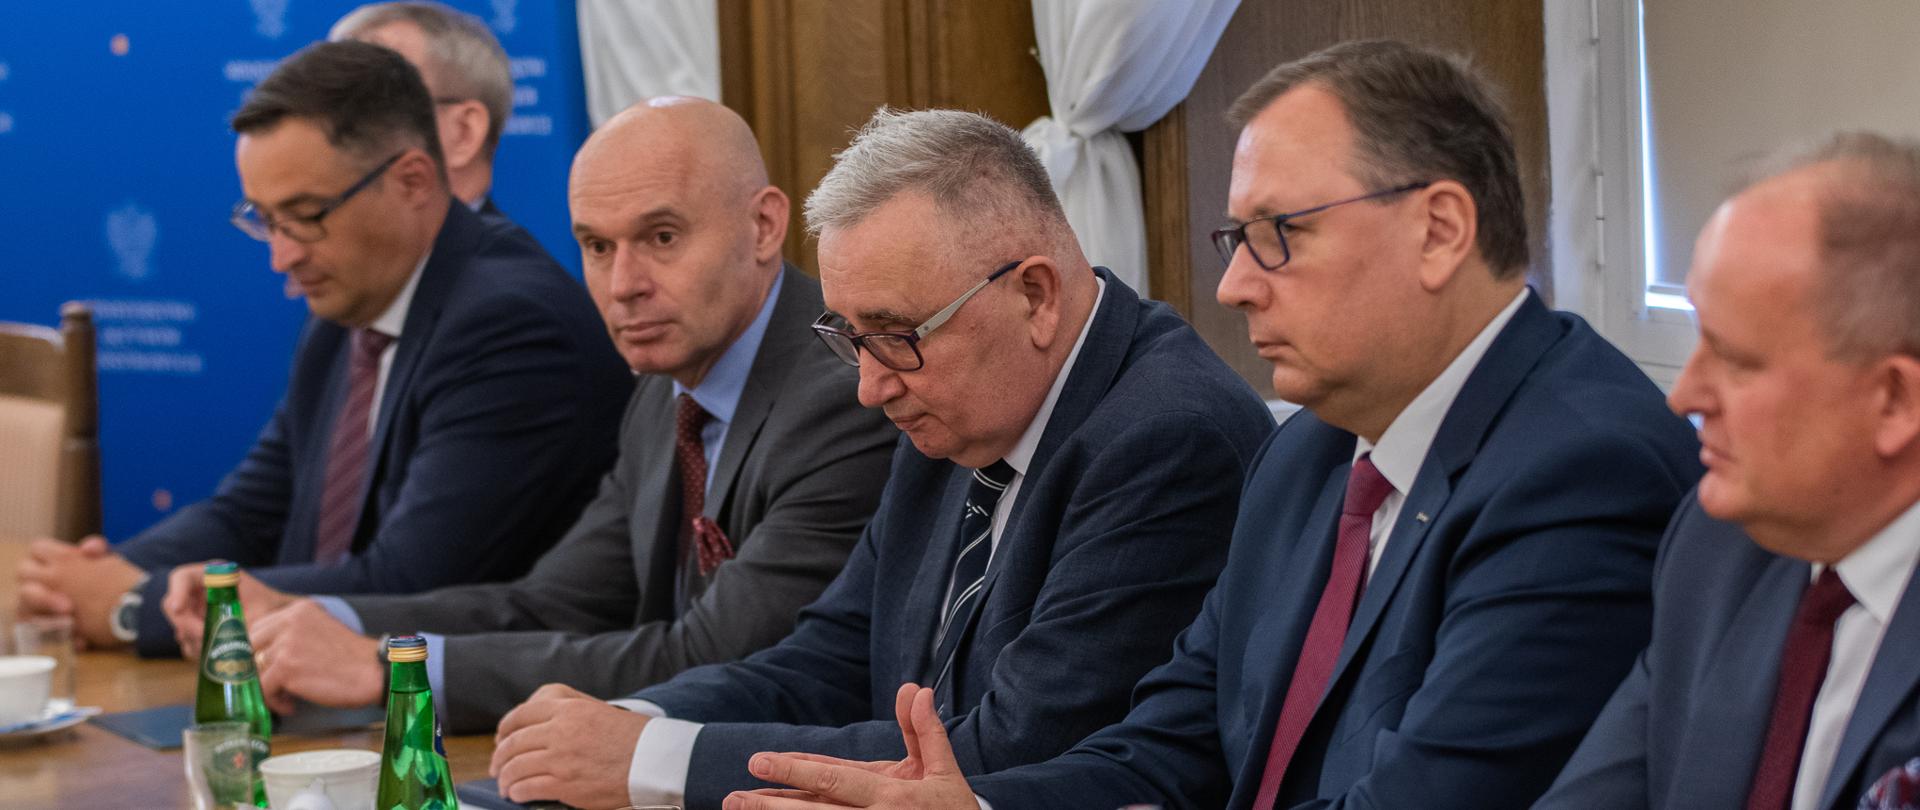 Wiceminister Piotr Pyzik siedzi za stołem wraz z innymi uczestnikami spotkania.